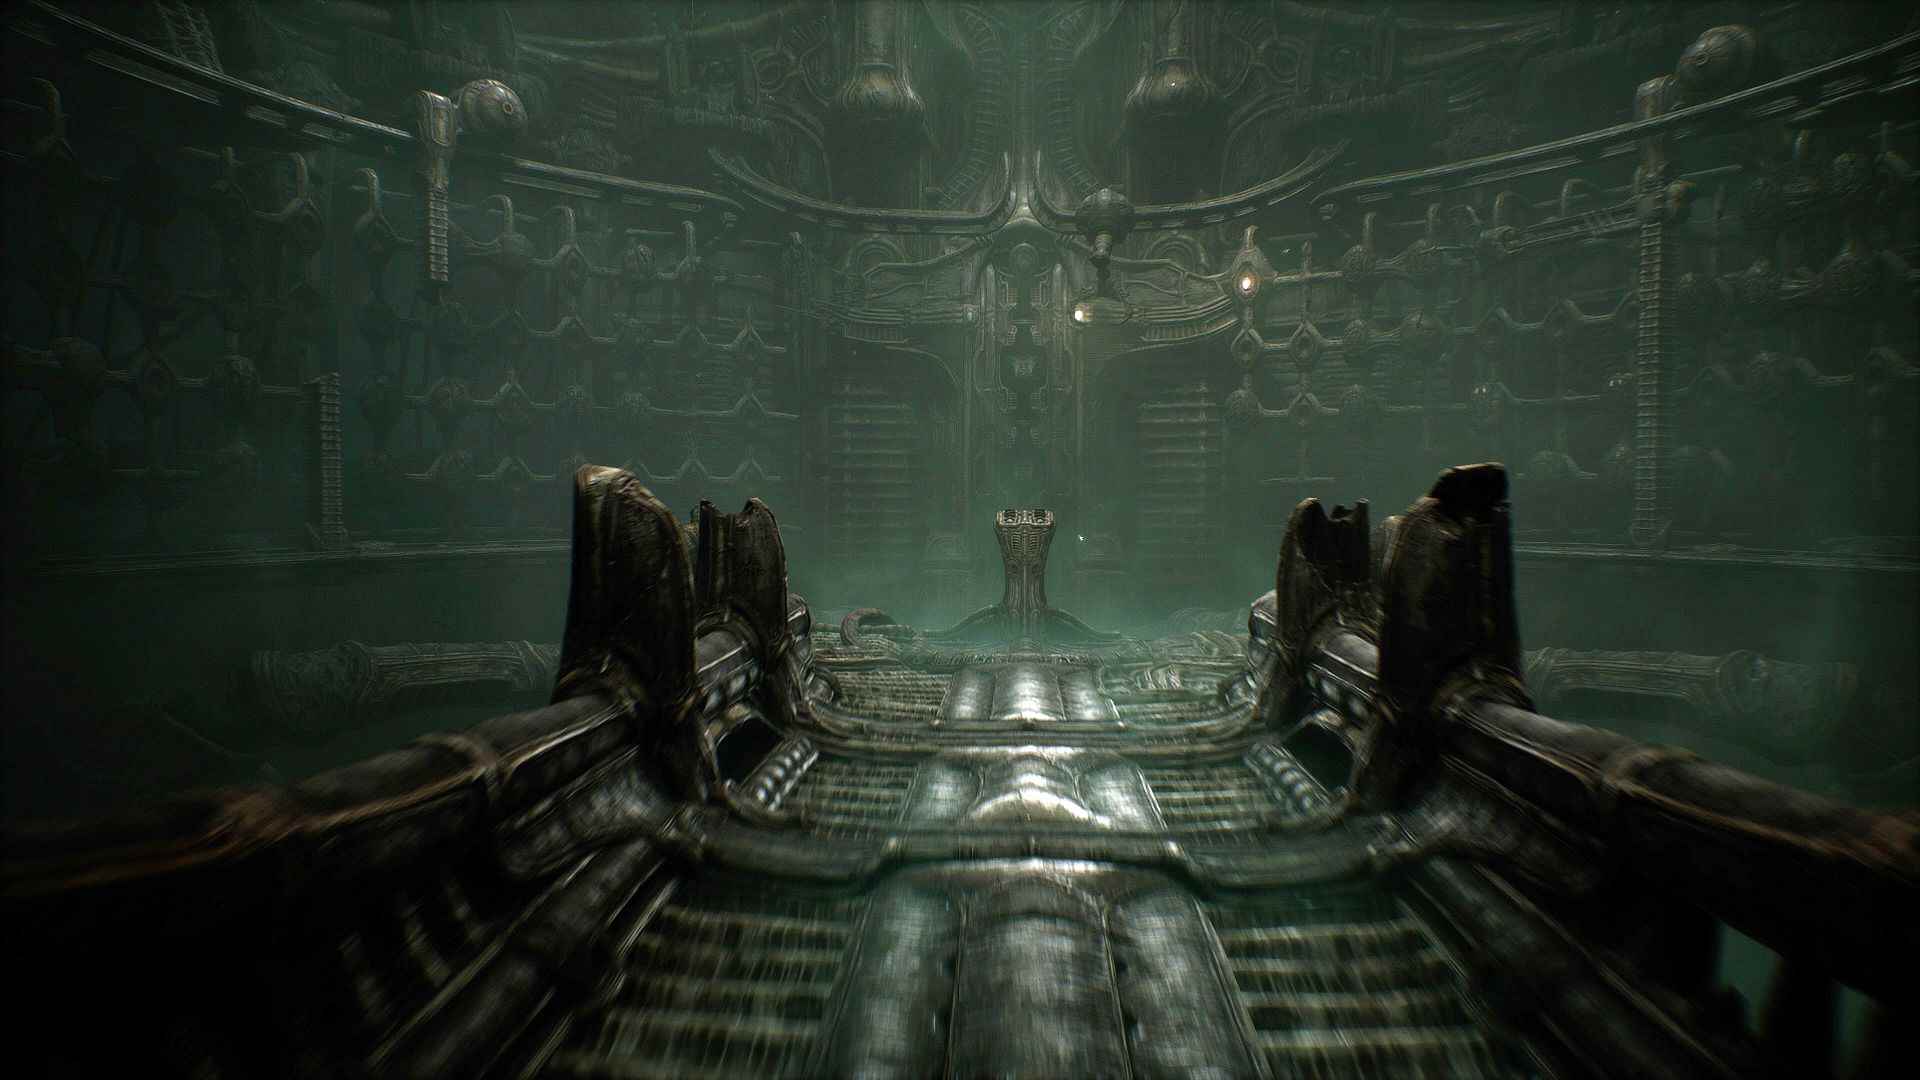 Scorn, harika bir Alien oyunu olabilir: vinç mekaniği ve kontrol paneli olan devasa bir yumurta odası